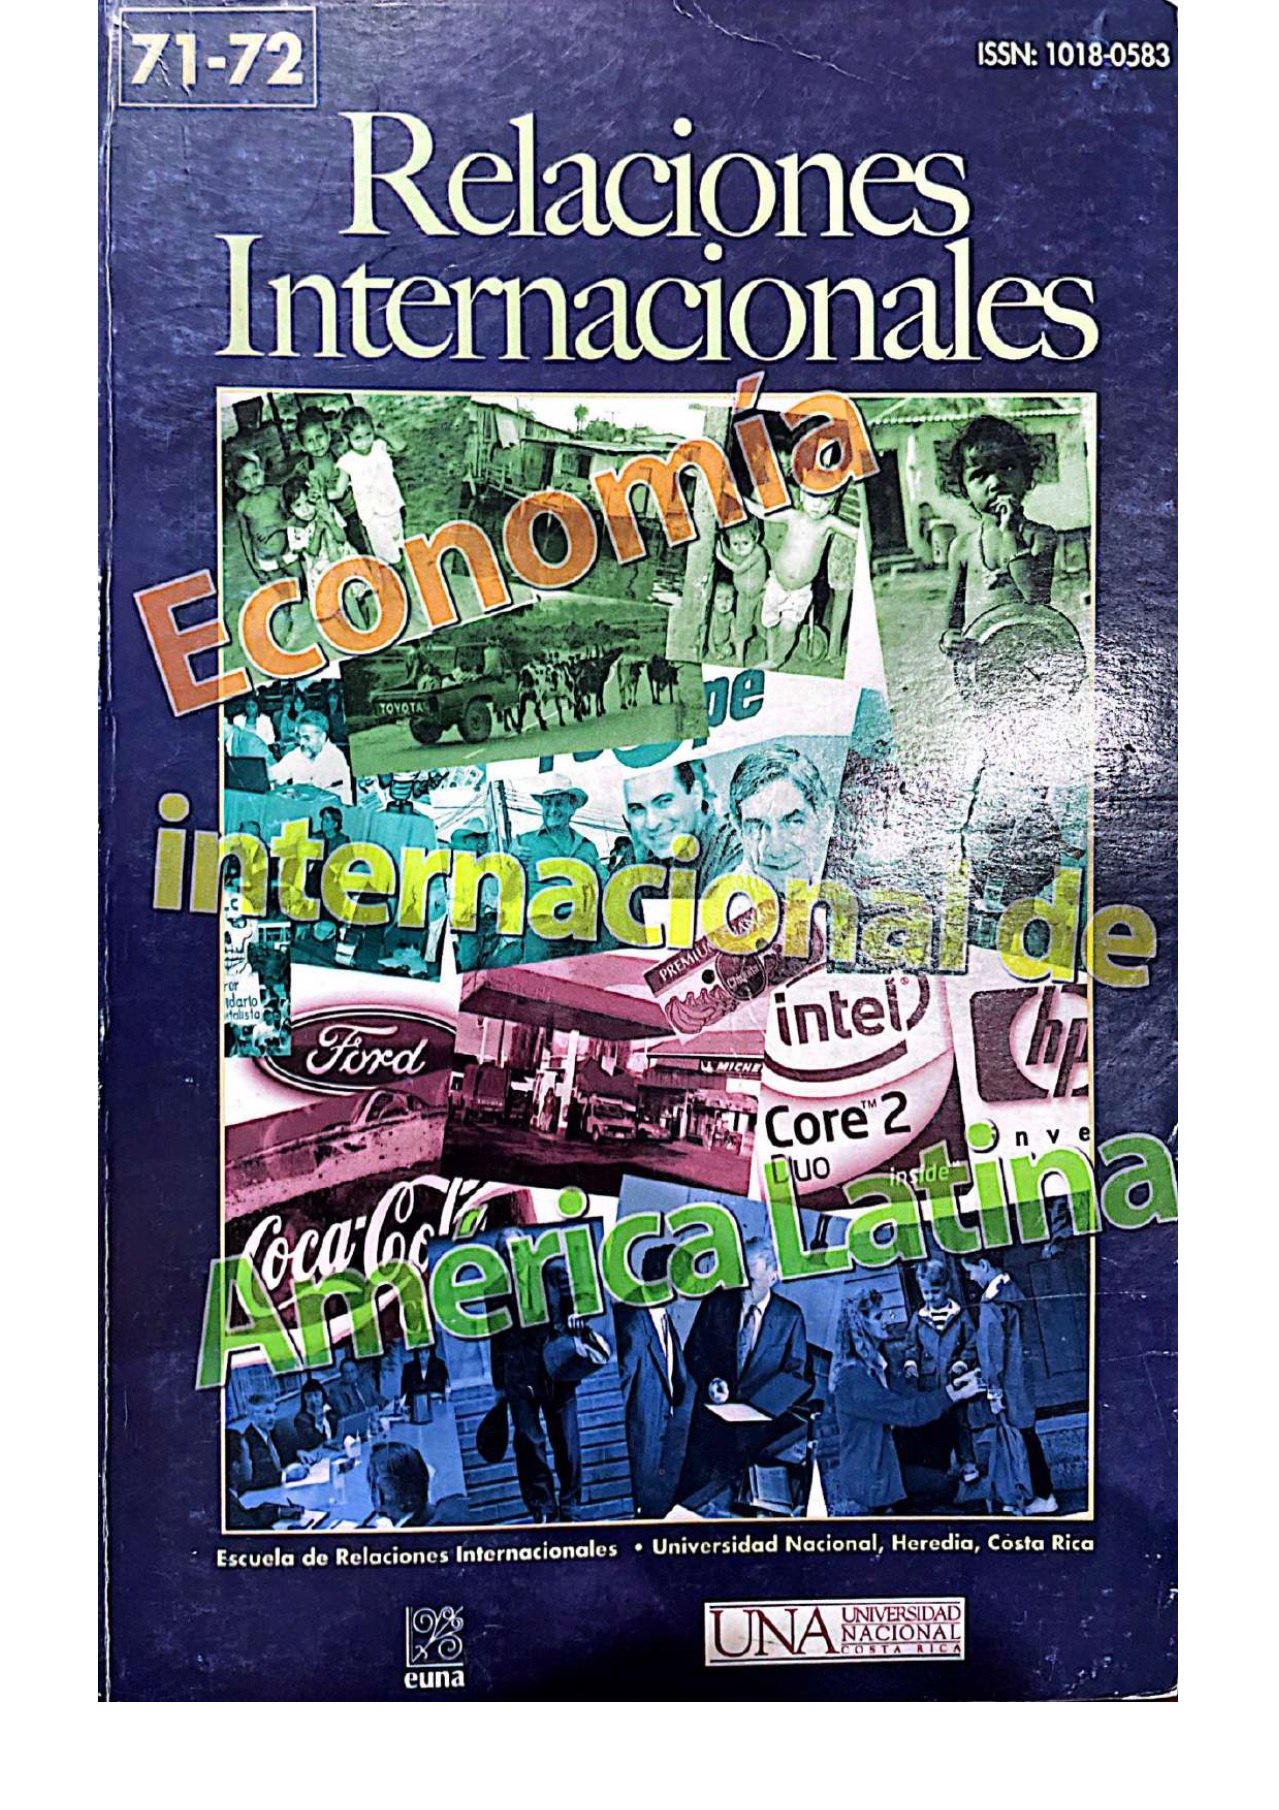 					Ver Vol. 71 Núm. 1 (2006): Relaciones Internacionales
				